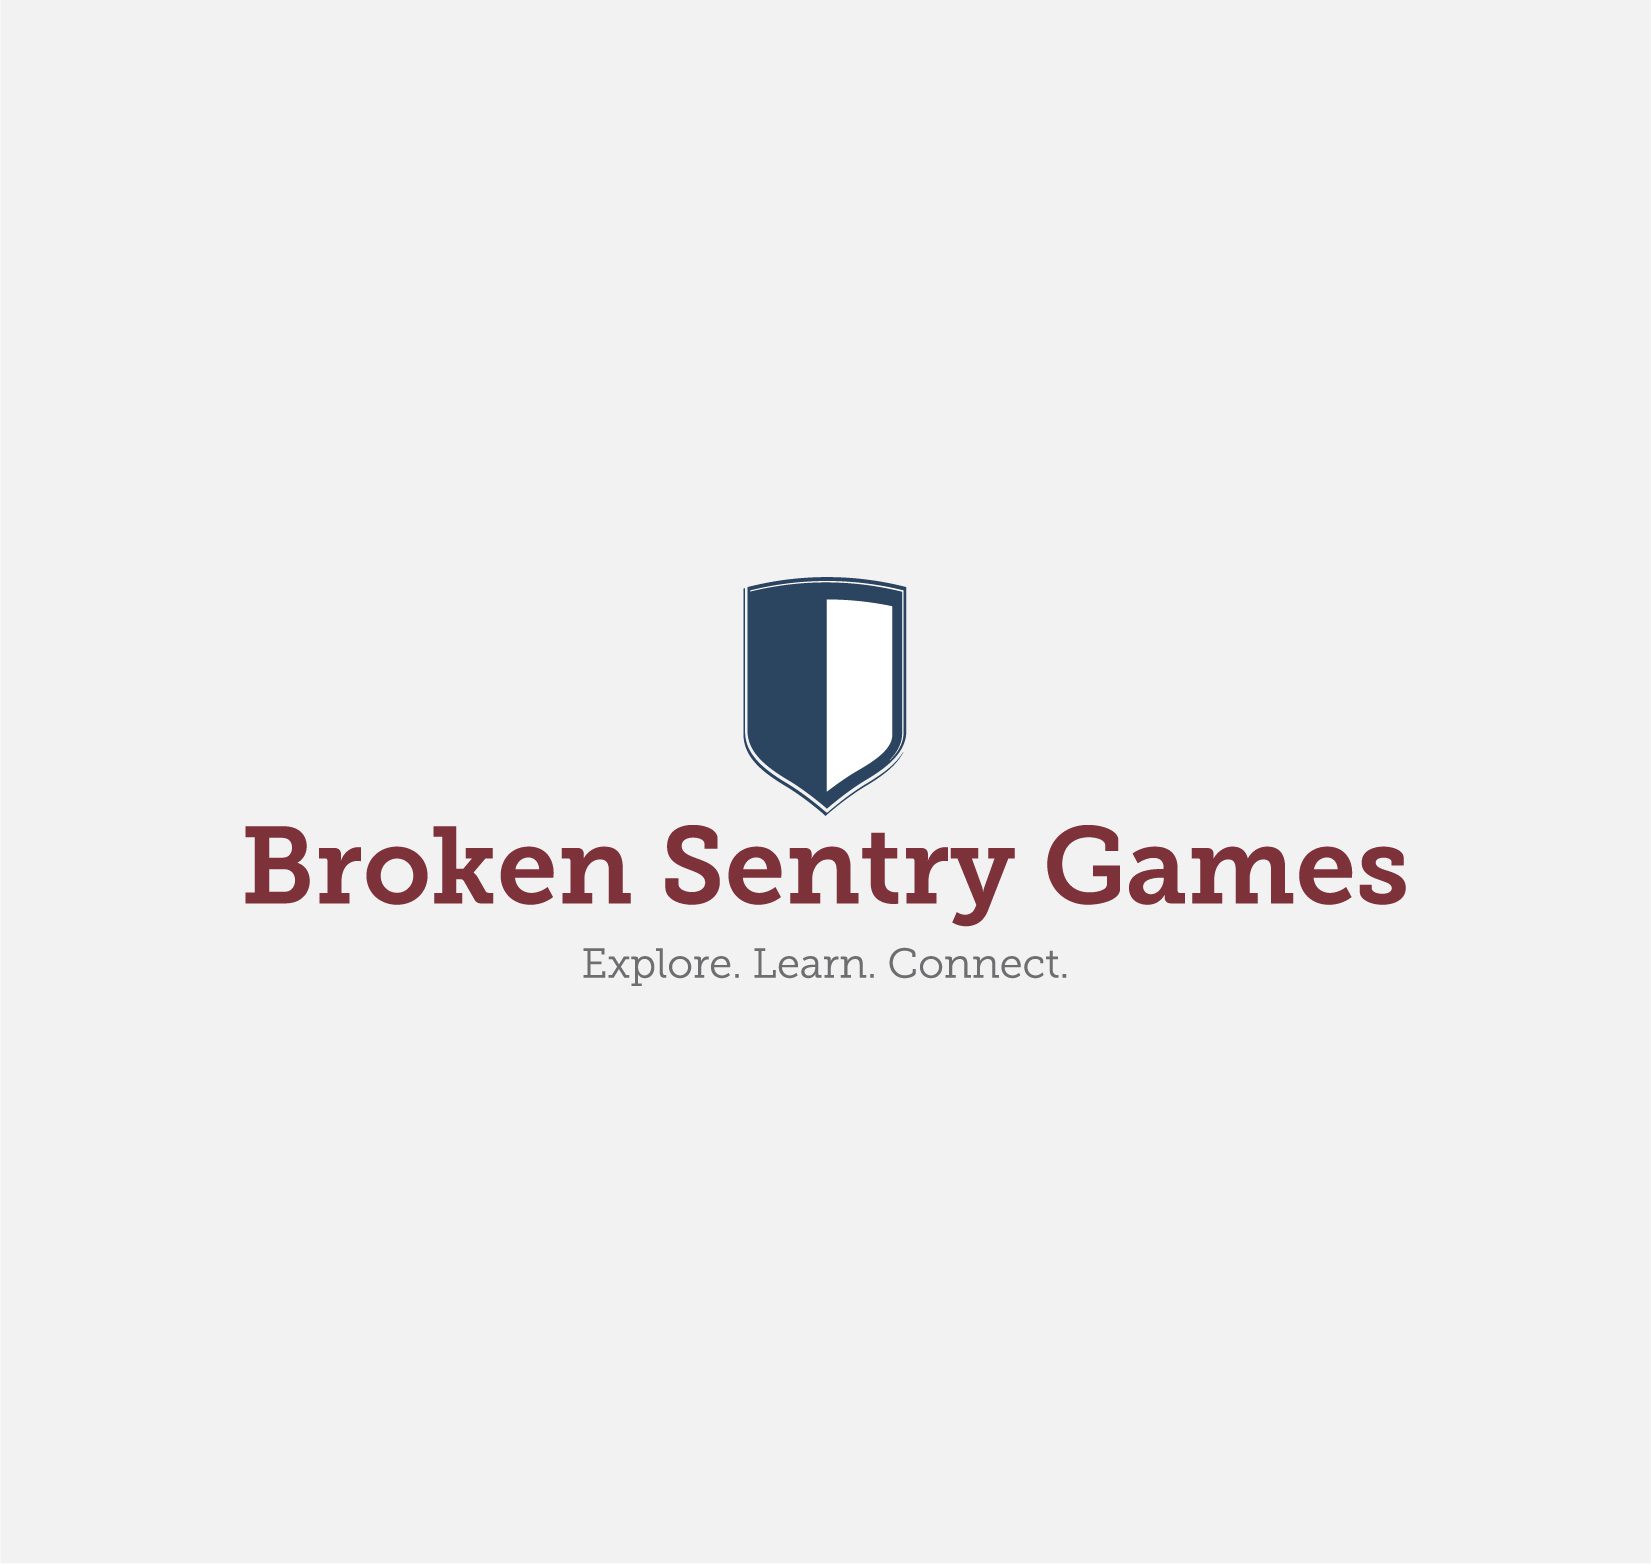 Broken Sentry Games logo